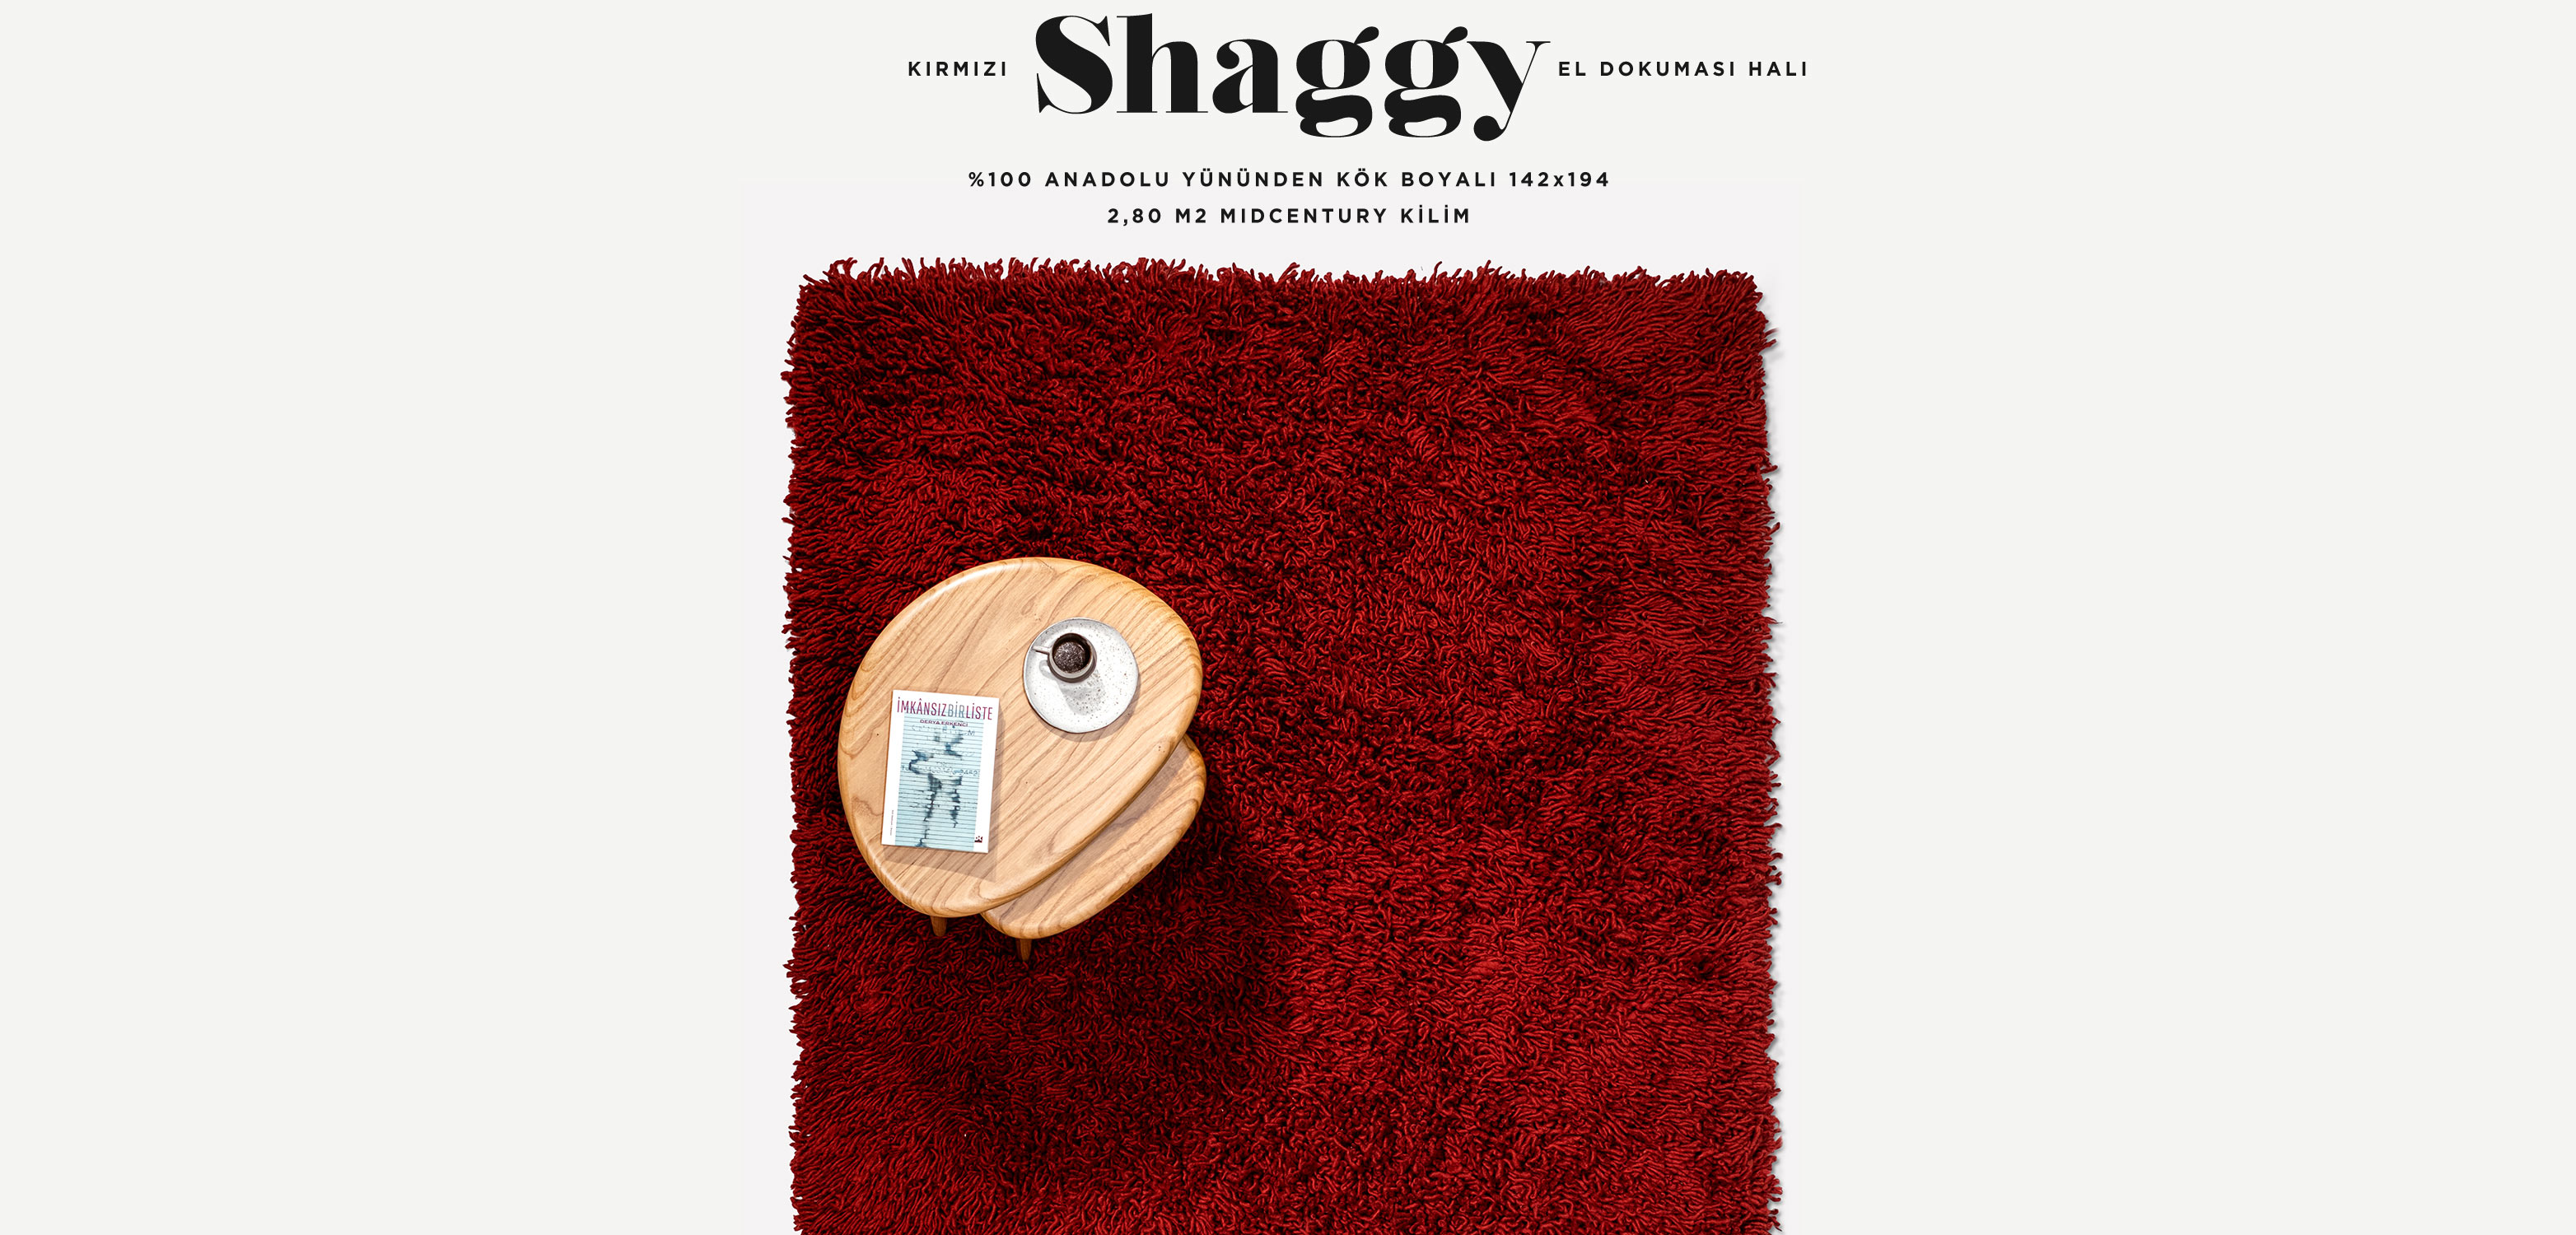 Shaggy Kırmızı El Dokuması Yün Halı 142x194, 2,80 m2'in resmi